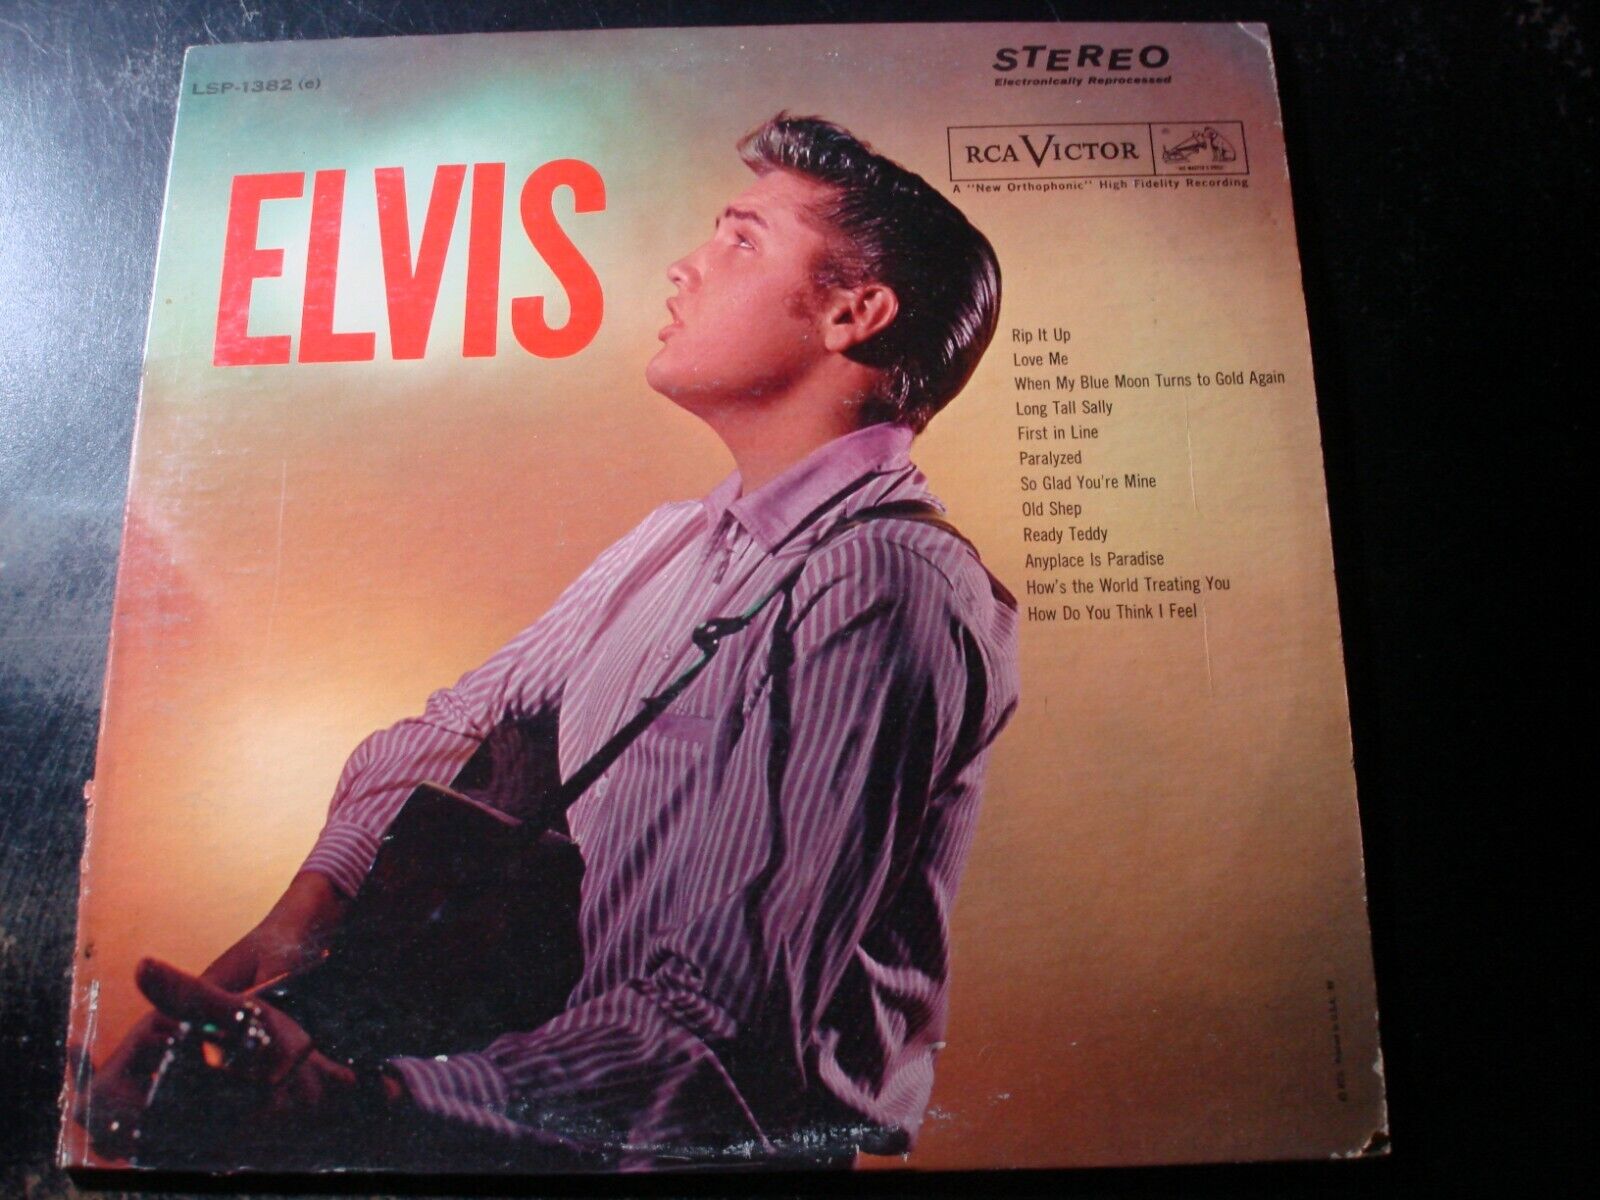 ELVIS PRESLEY SELF TITLED LP RECORD LSP-1382(e) ELVIS